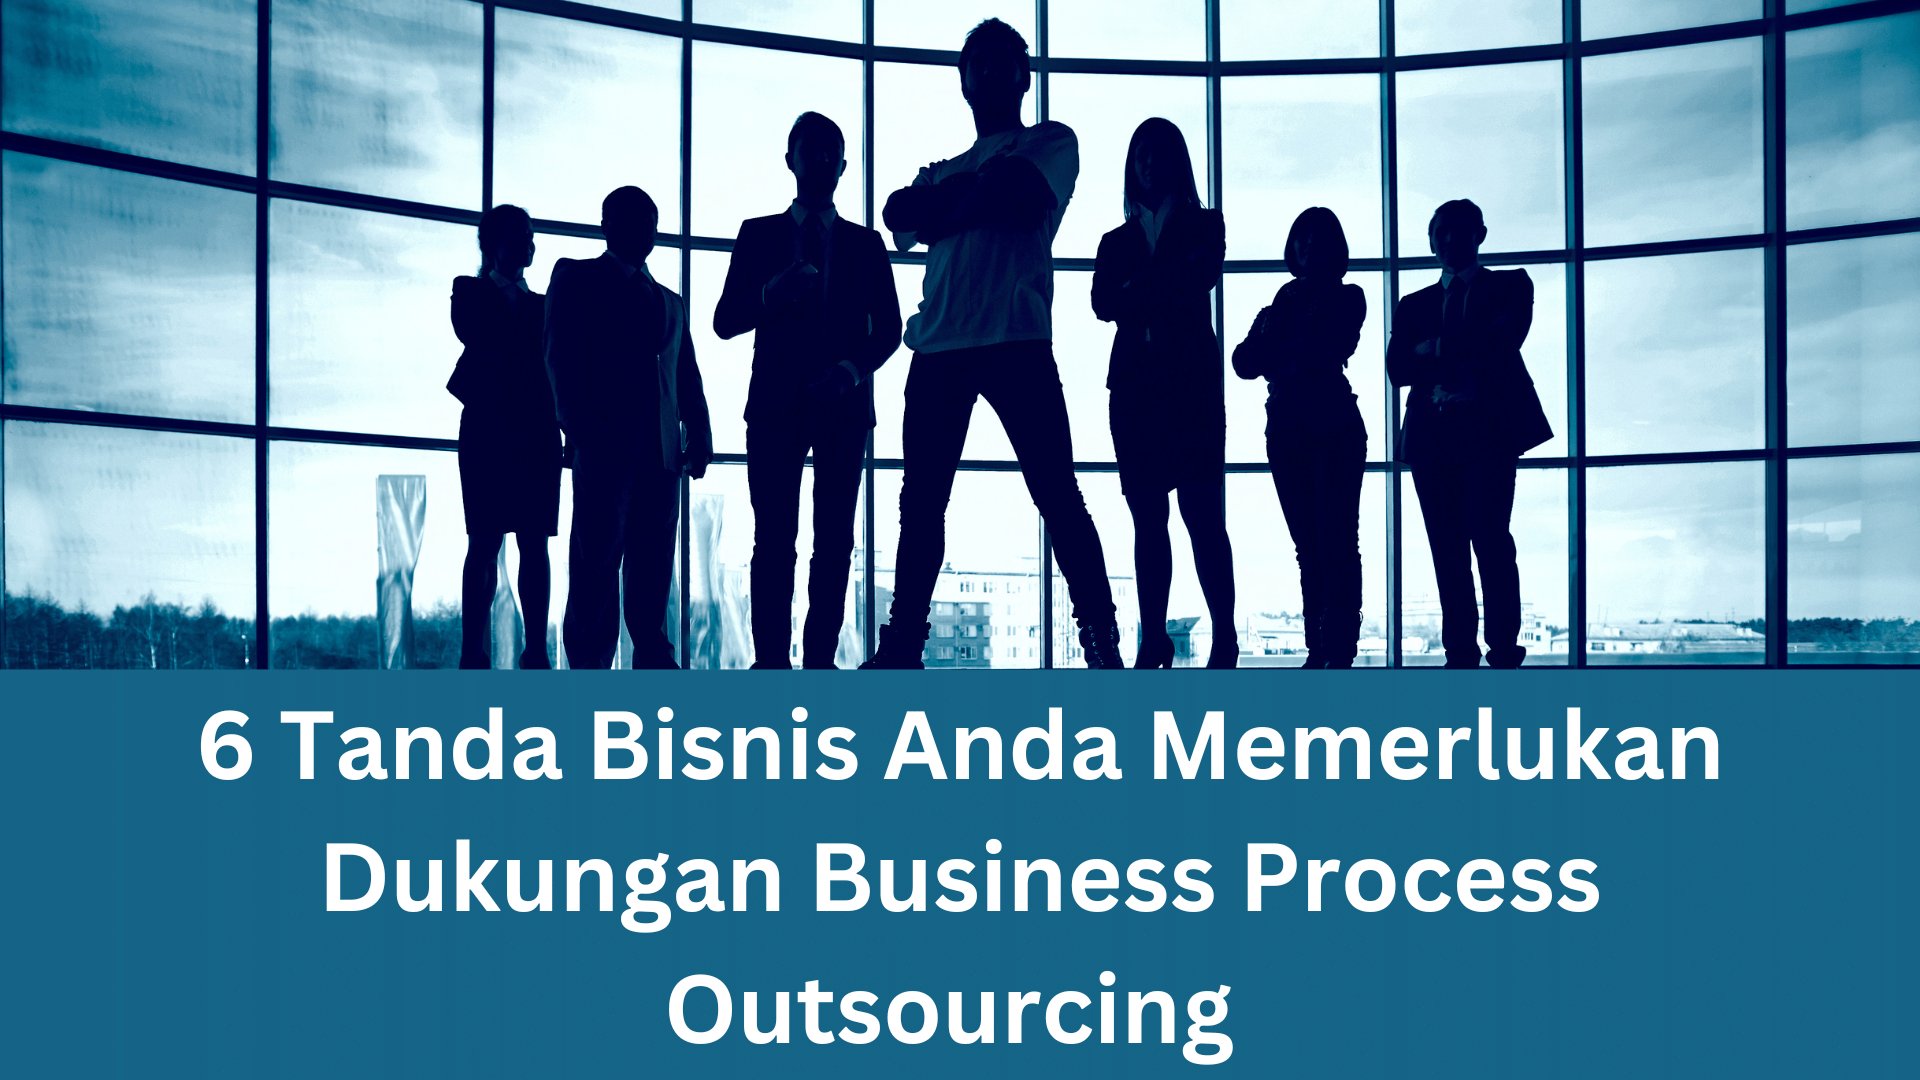 Image of 6 Tanda Bisnis Anda Memerlukan Dukungan Business Process Outsourcing 